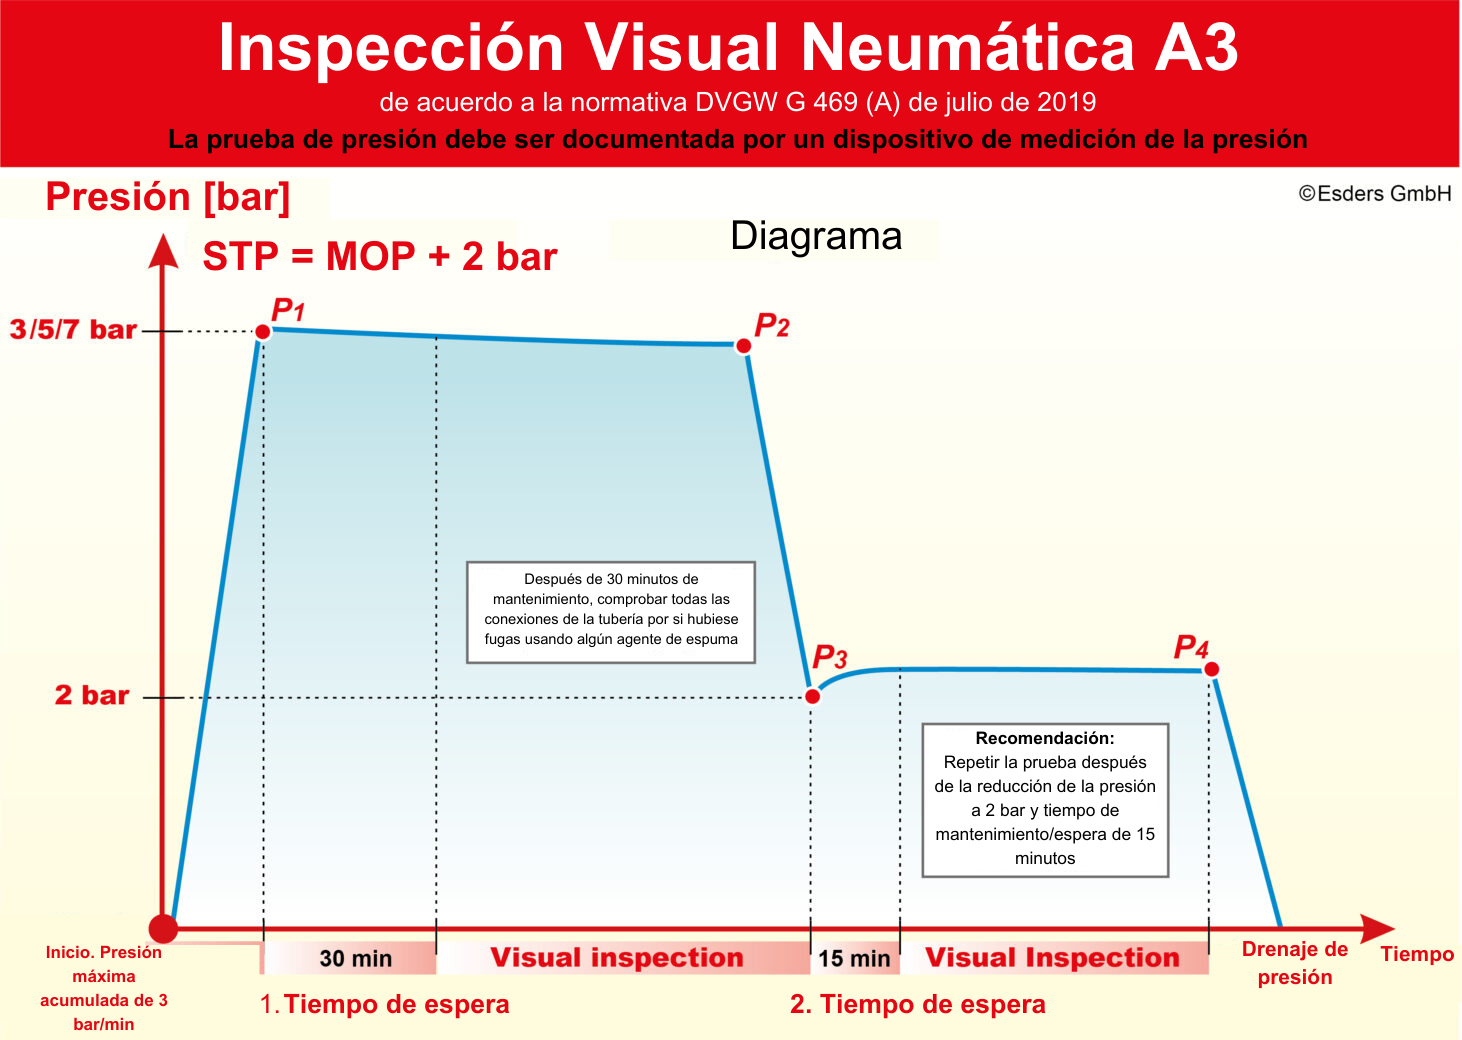 Inspección visual neumática A3 según la normativa DVGW G 469